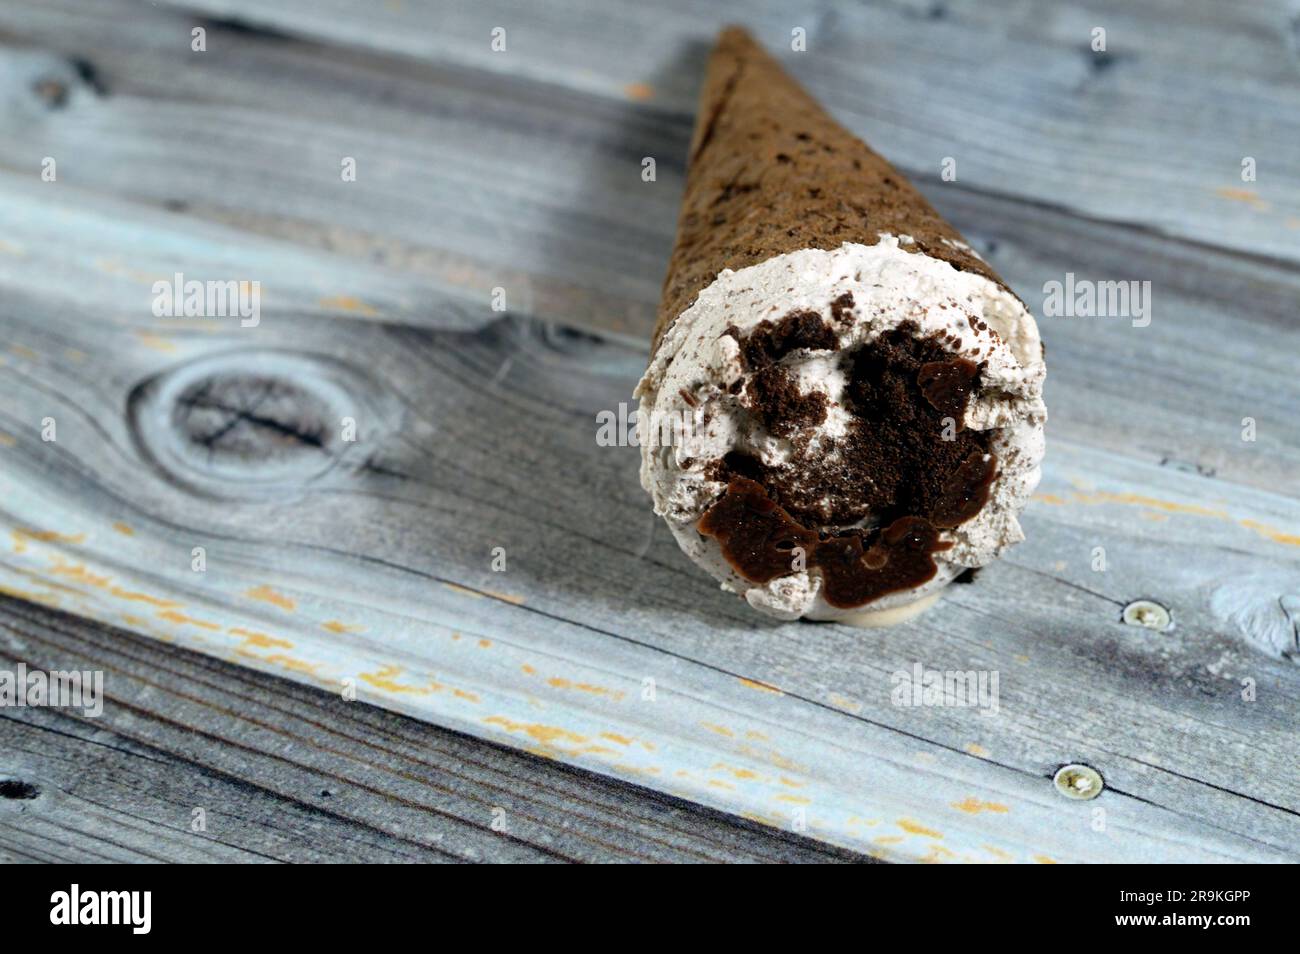 Eiscreme aus Kakao, Schokolade und Vanilleschote mit Schokoladenchips, Keksstücken in knusprigen Waffeln, schmelzendes kaltes Eis, mit dem man wirbeln kann Stockfoto